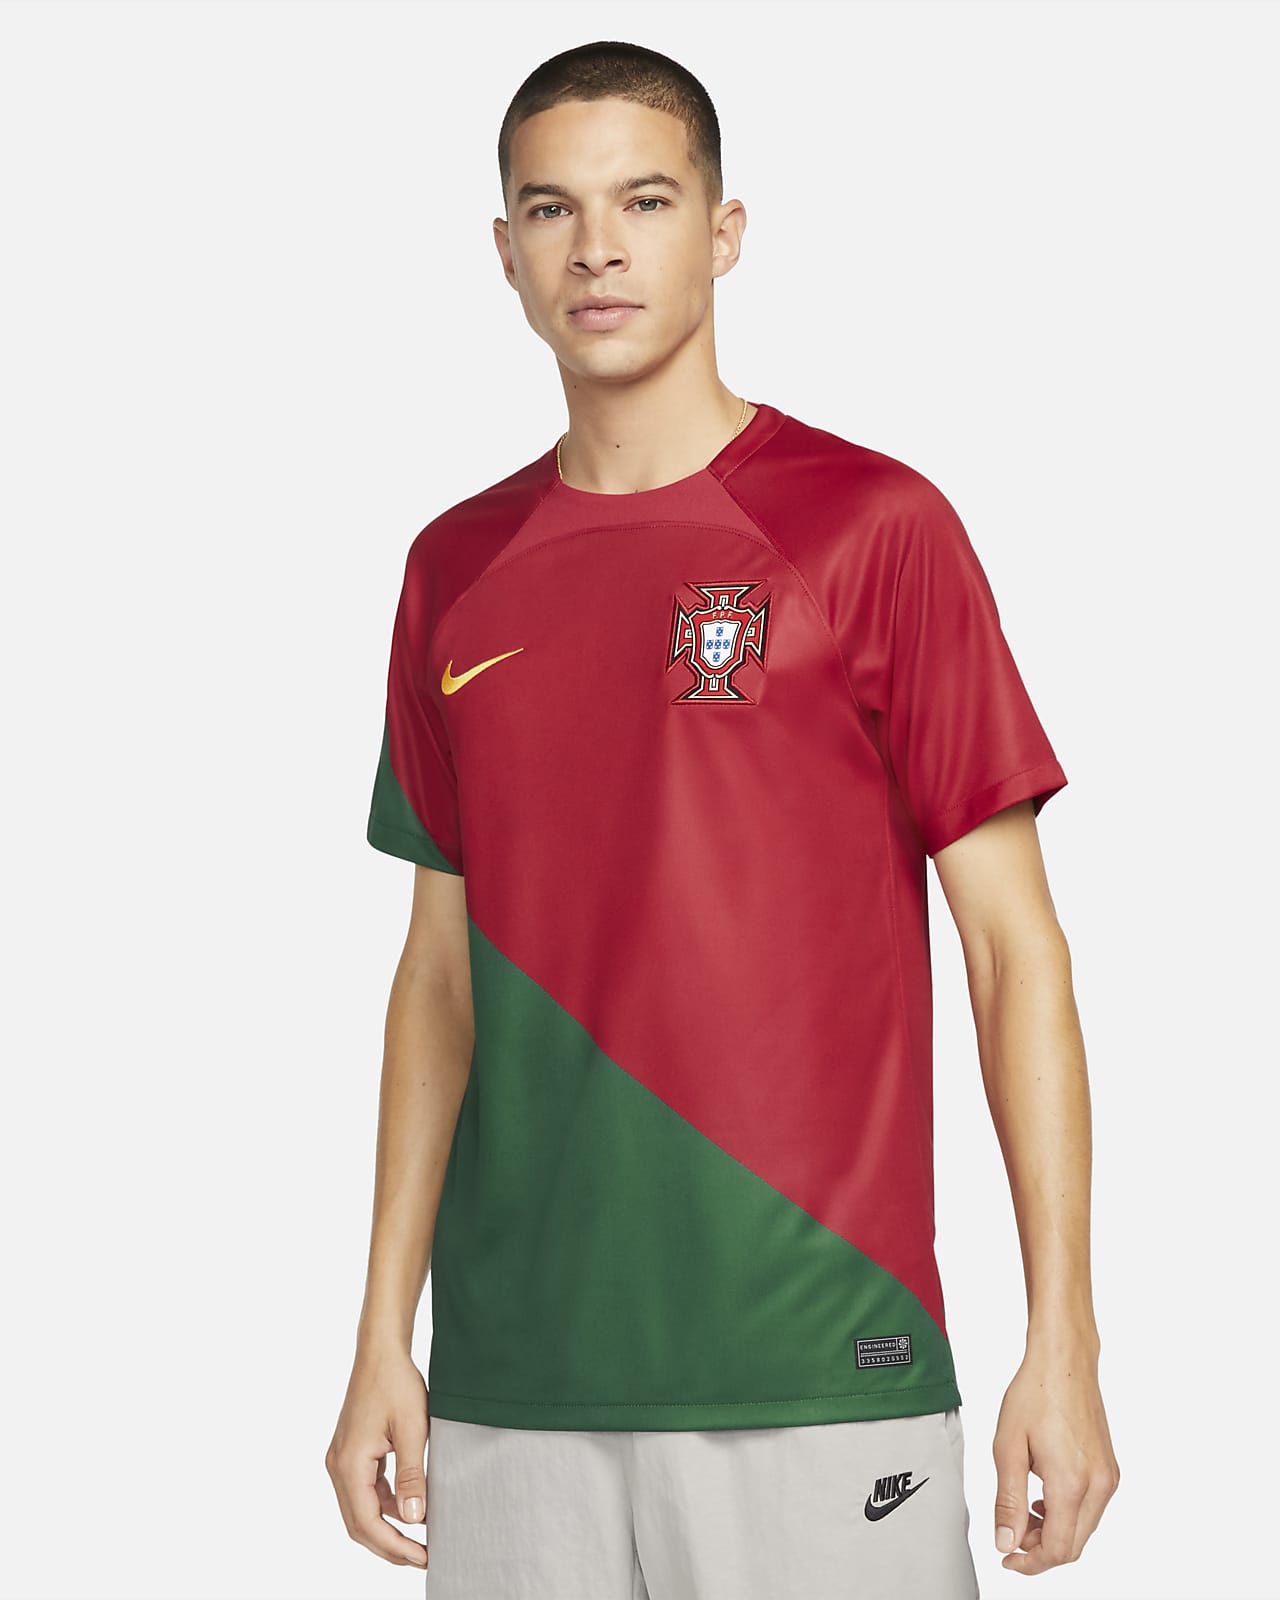 Rendezvous film werkzaamheid Portugal 2022/23 Stadium Thuis Nike Dri-FIT voetbalshirt voor heren. Nike NL